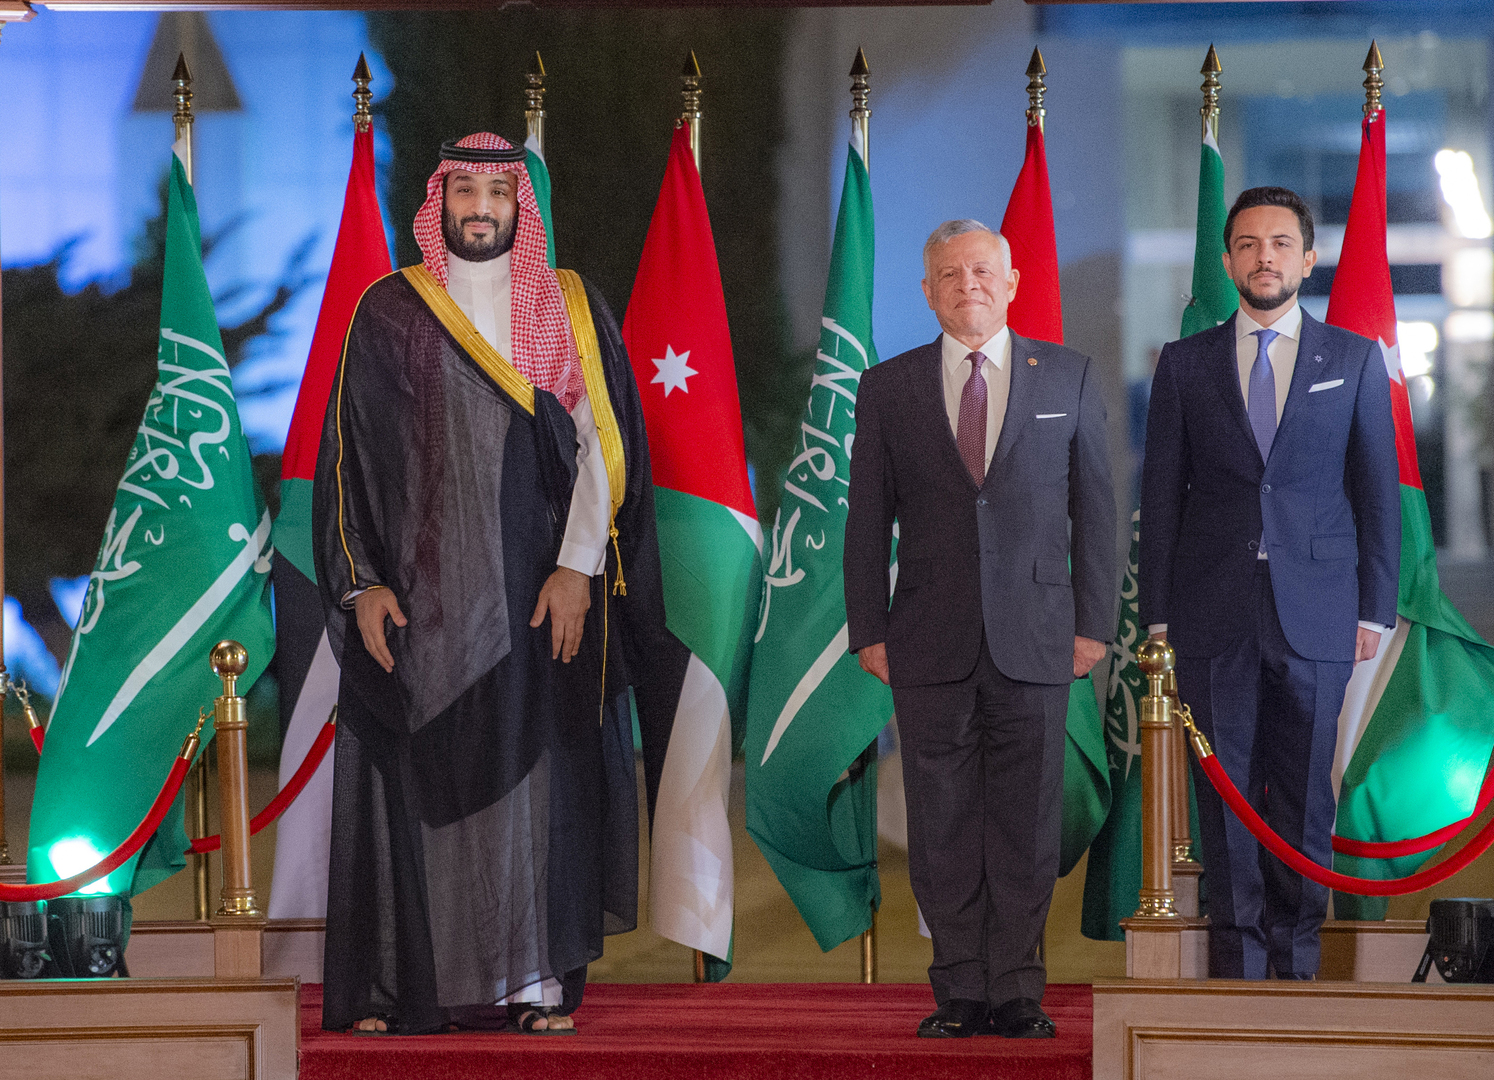 أسلوب تحية الأمير محمد بن سلمان لولي عهد الأردن يثير تفاعلا (فيديوهات)